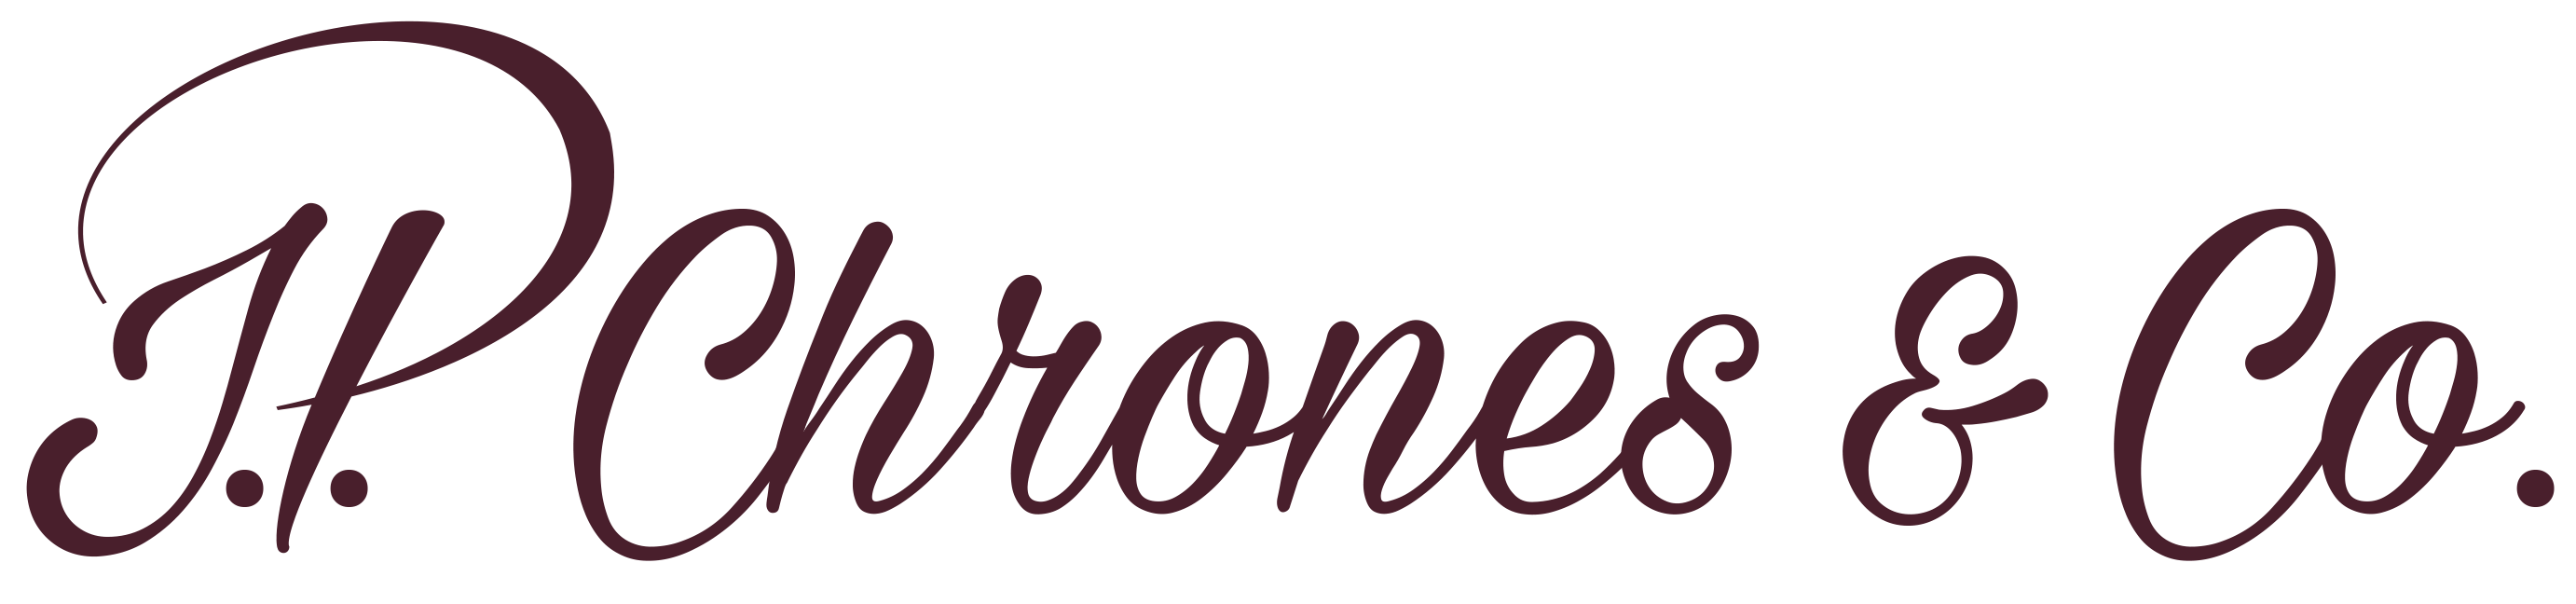 JP Chrones & Co. Logo